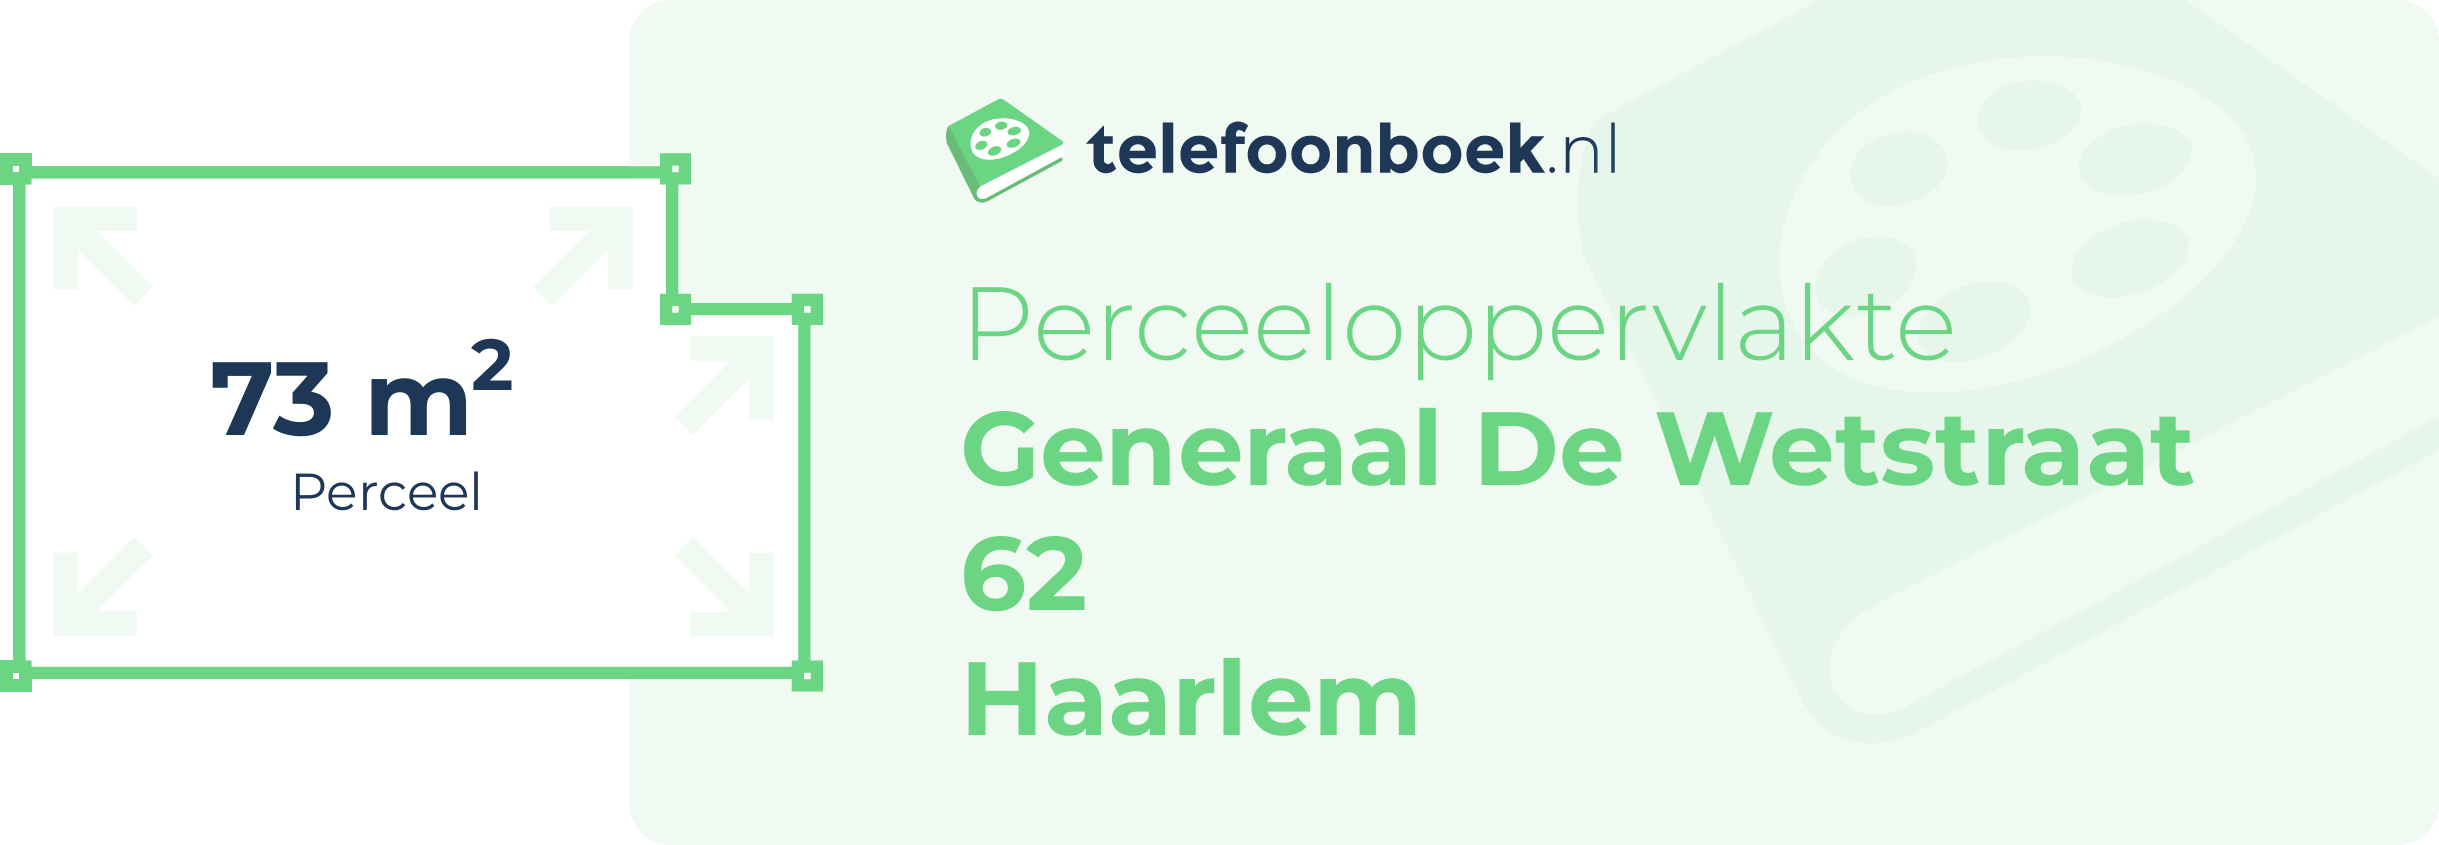 Perceeloppervlakte Generaal De Wetstraat 62 Haarlem